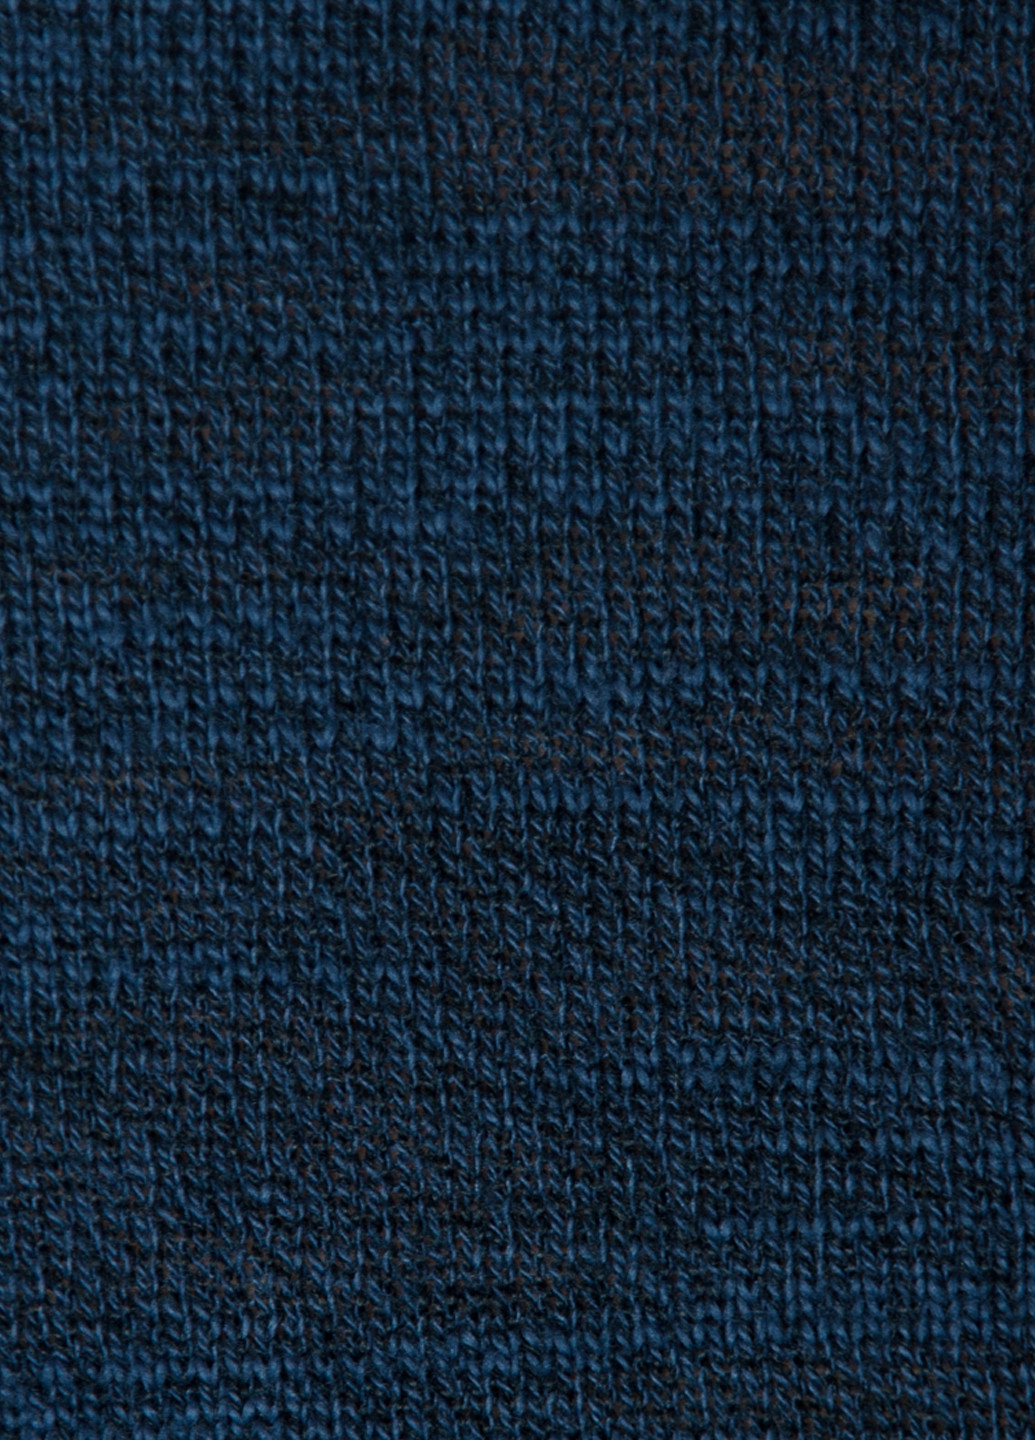 Синій зимовий пуловер чоловічий Arber V-neck N-AVT-67